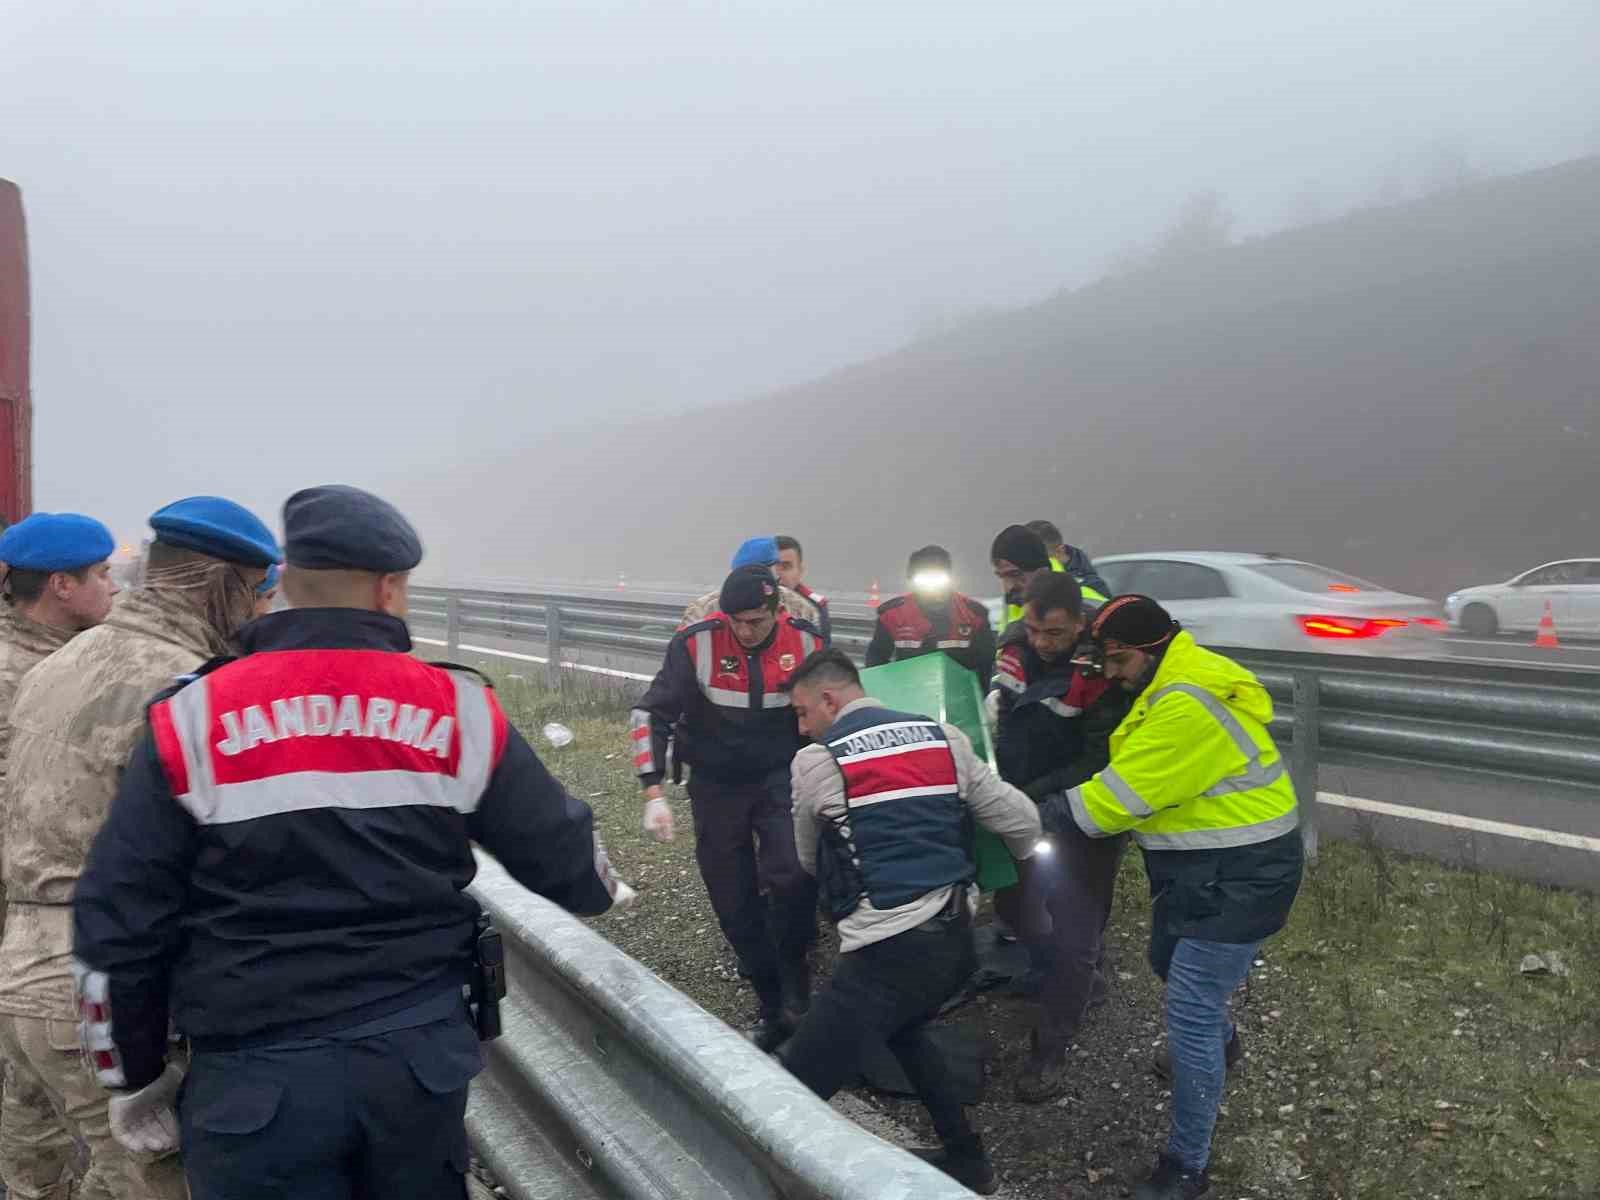 Kuzey Marmara Otoyolu’nda feci kaza: 11 ölü, 57 yaralı